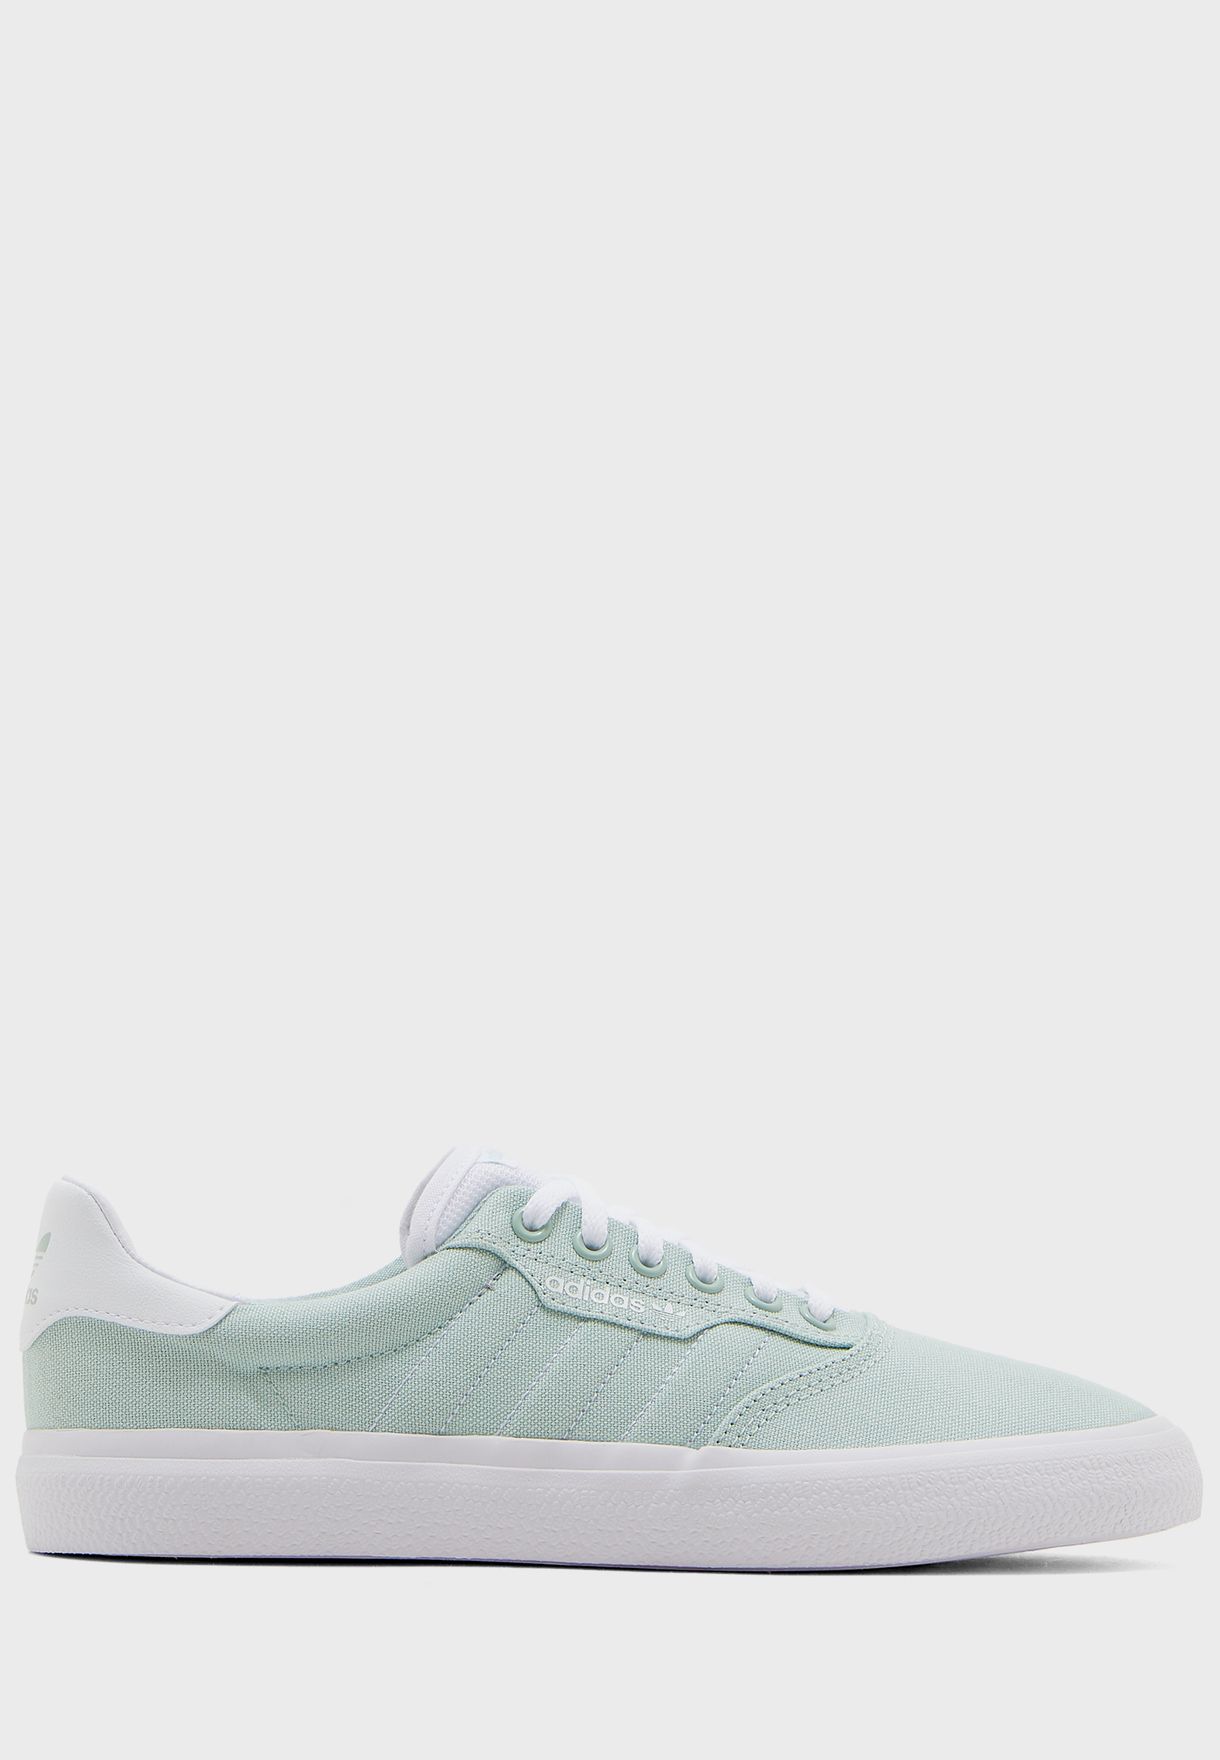 adidas 3mc white green